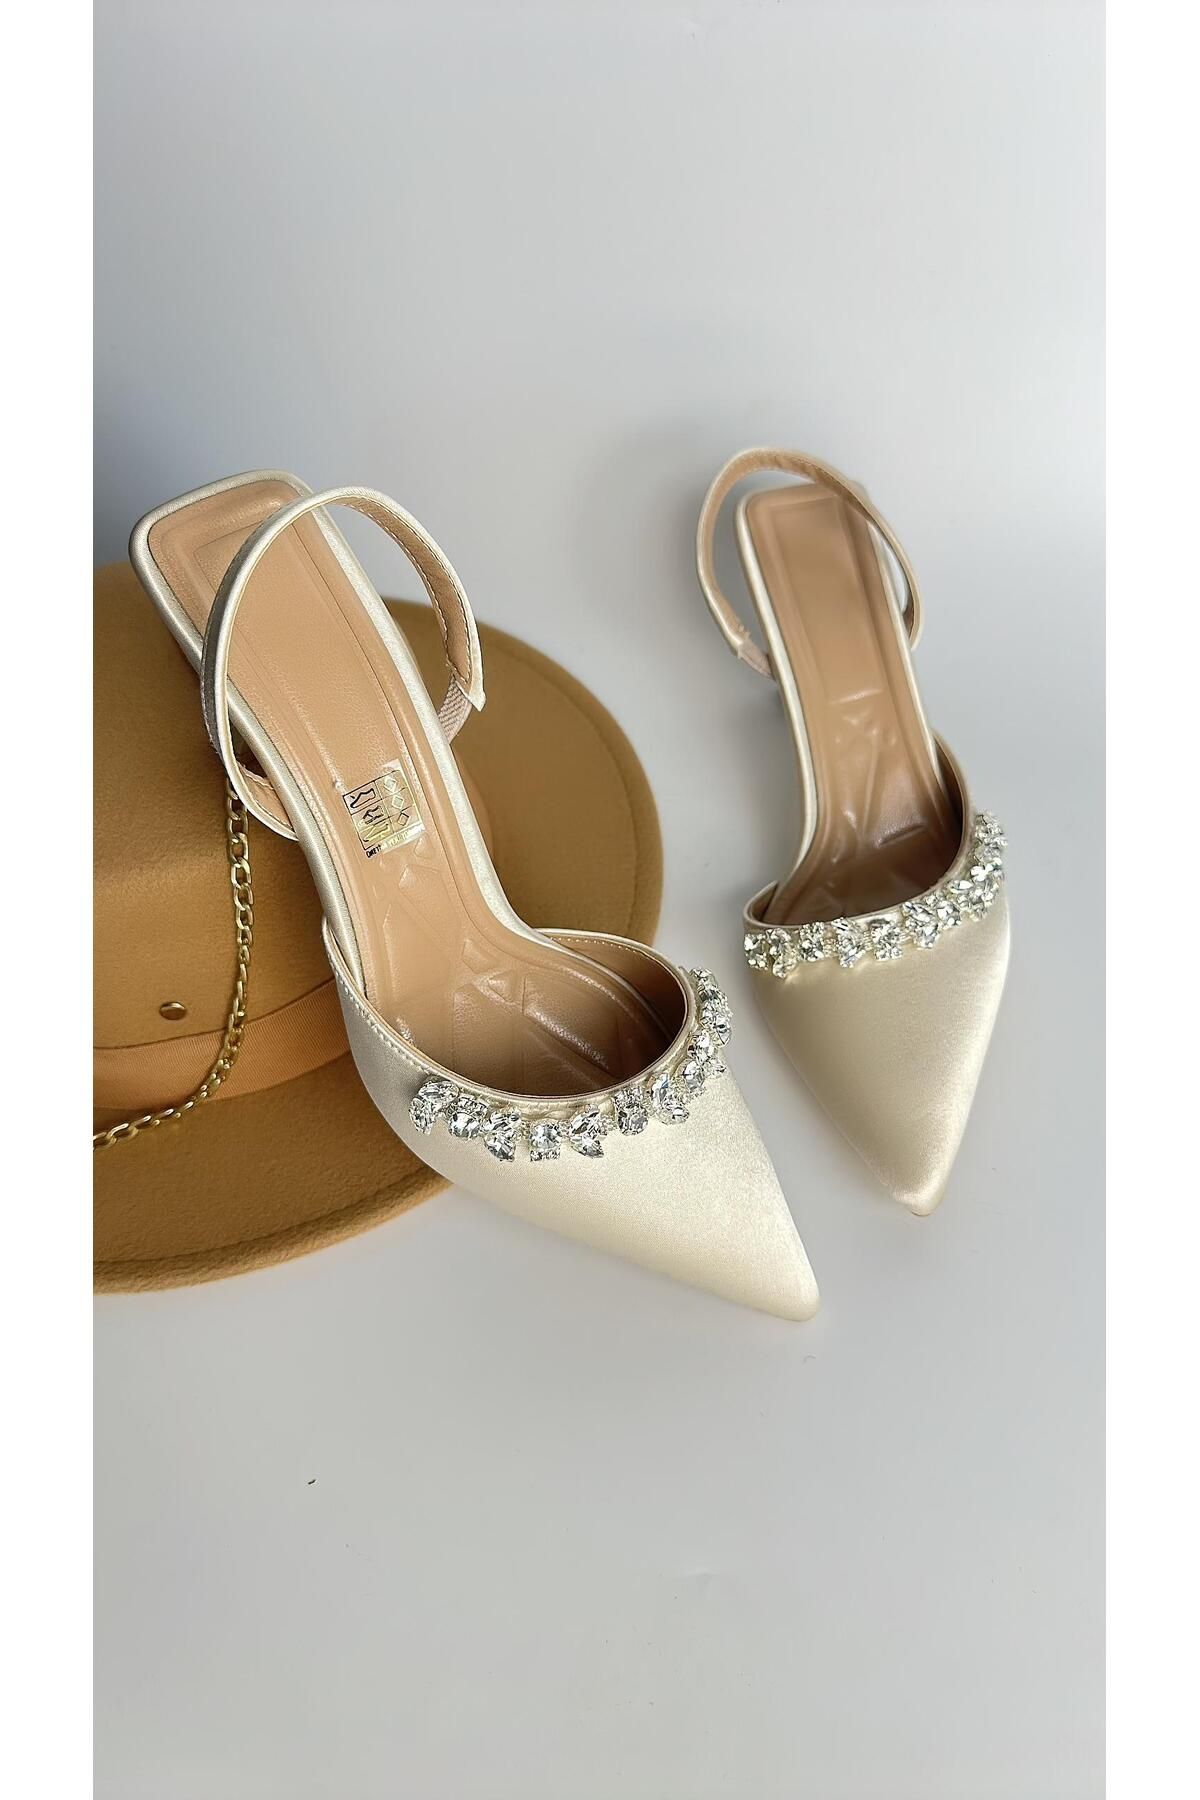 Gloriys Ayakkabı & Çanta Ten saten 6 cm topuklu taşlı ayakkabı 0560